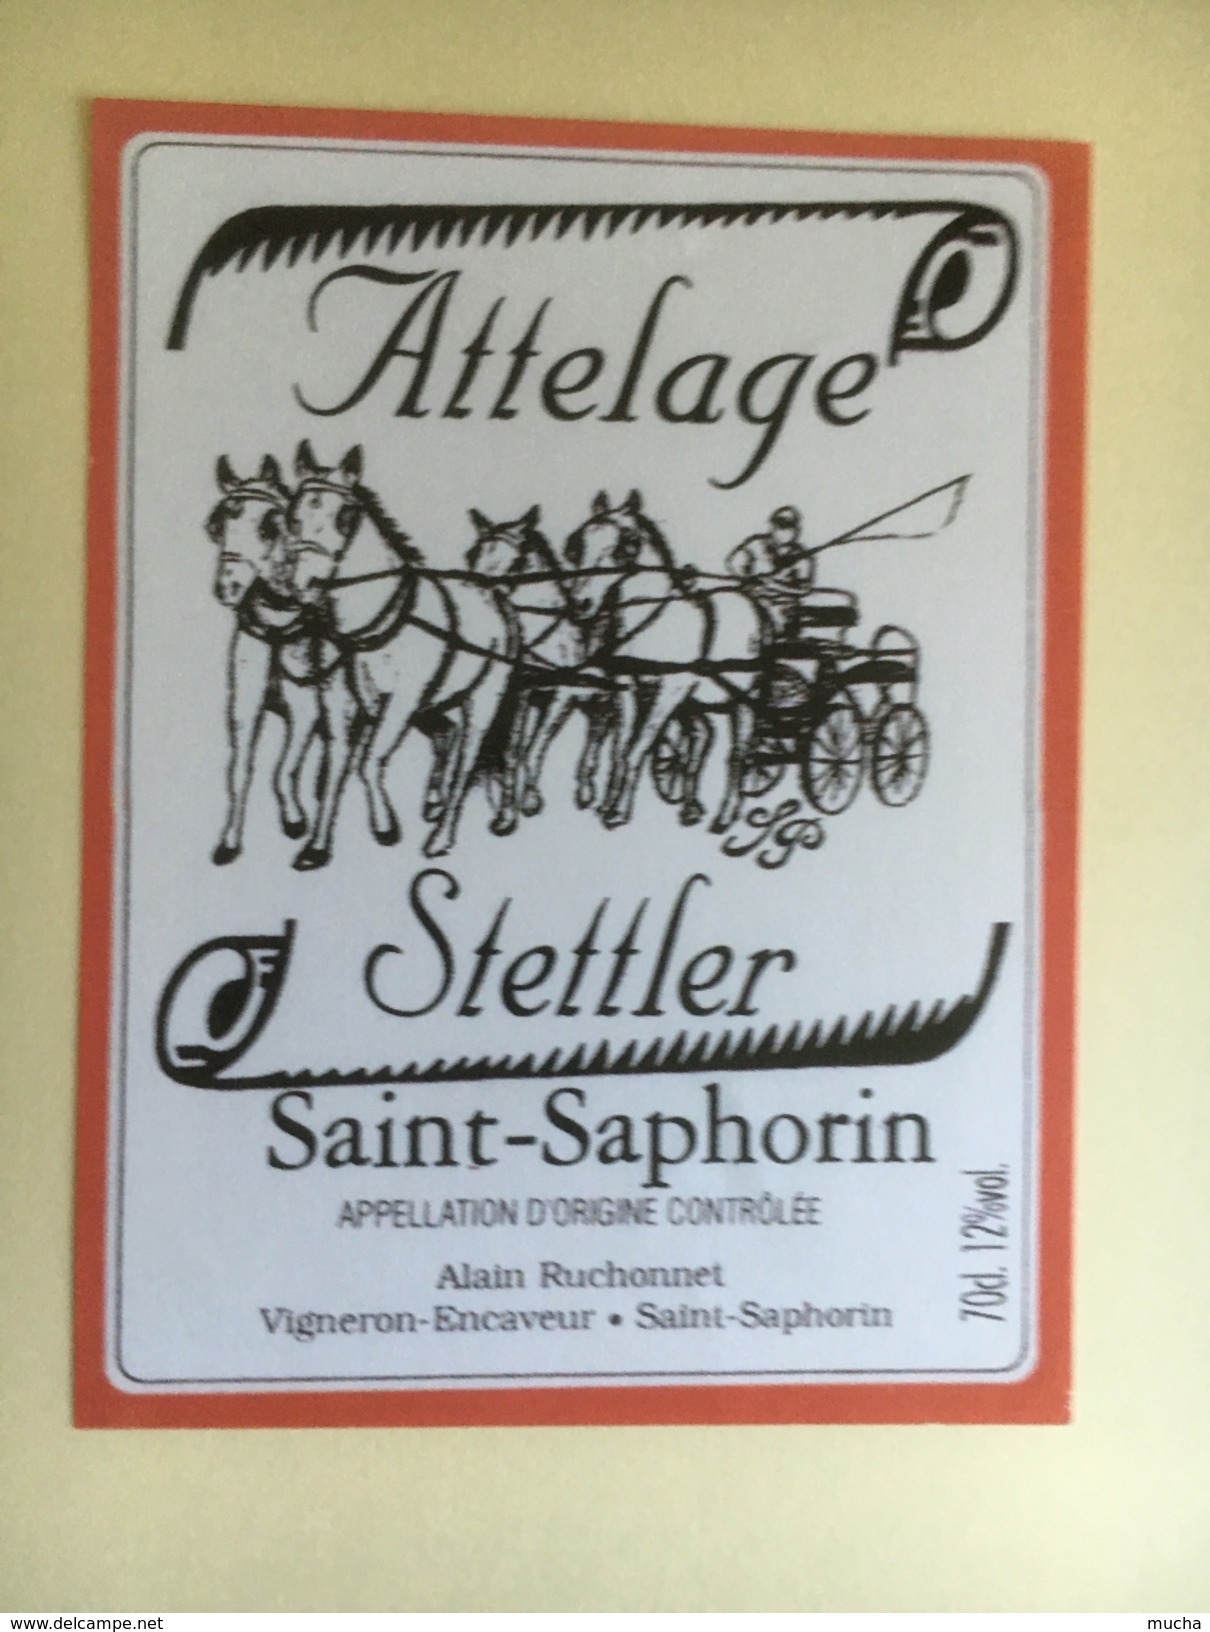 1211 - Suisse Saint-Saphorin Attelage Stettler - Pferde